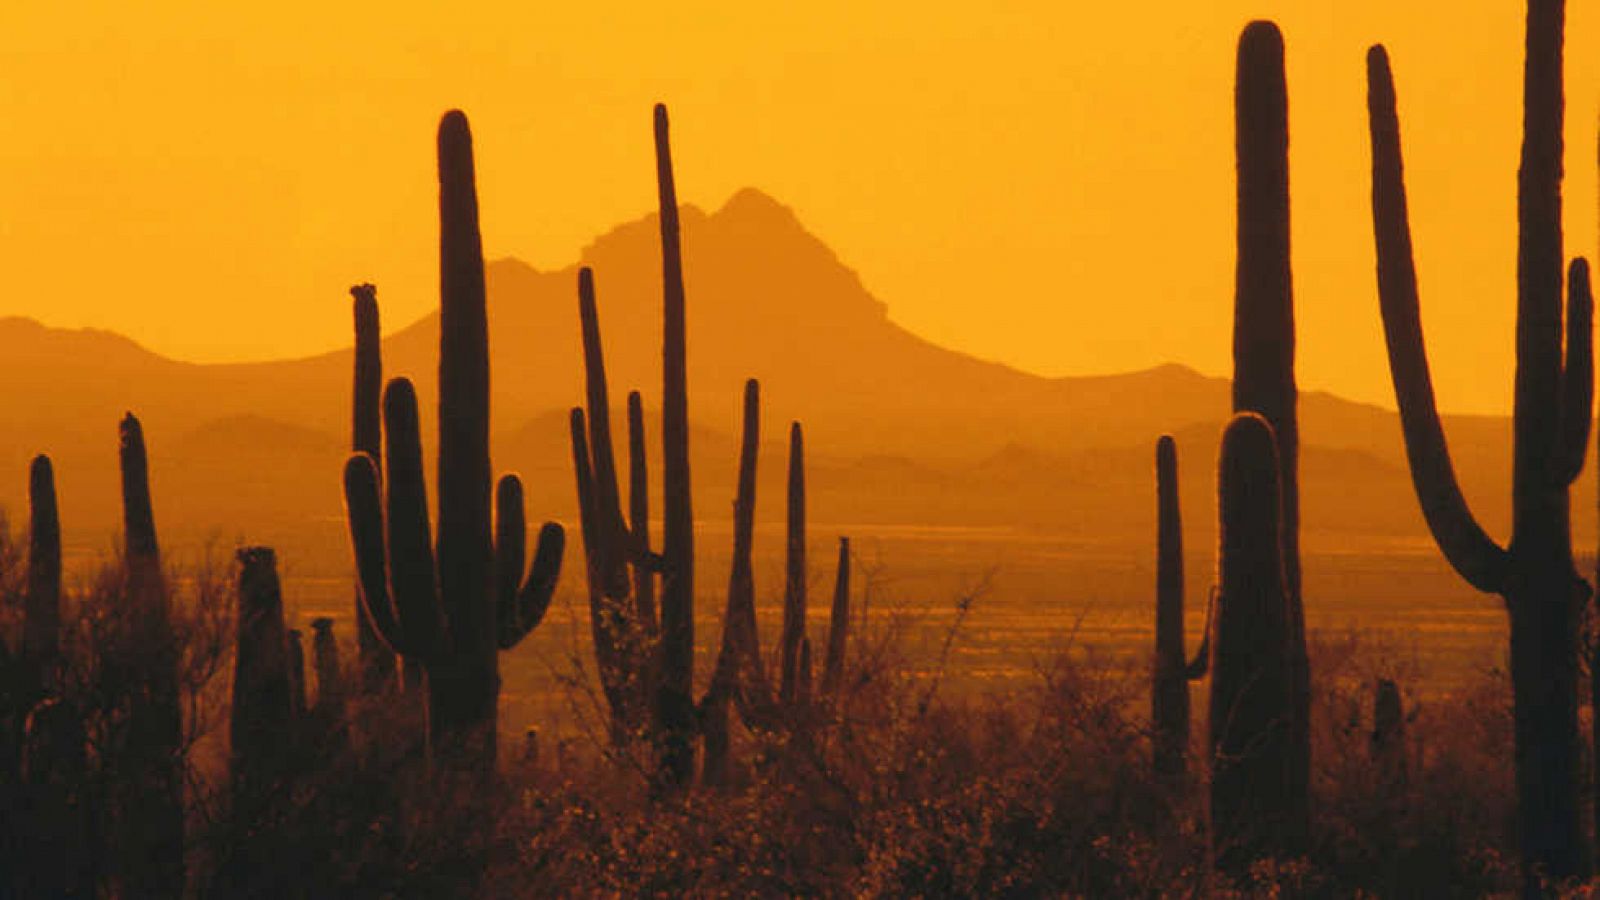 Grandes documentales - Parques nacionales norteamericanos: Saguaro